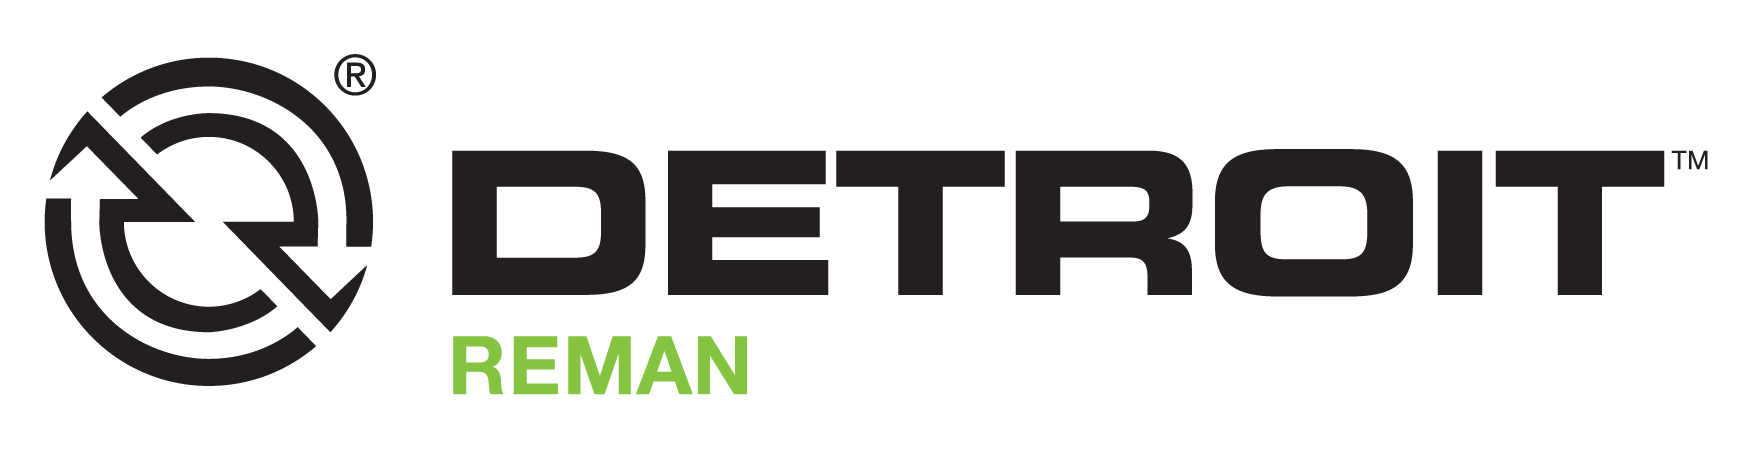 Detroit Reman Logo